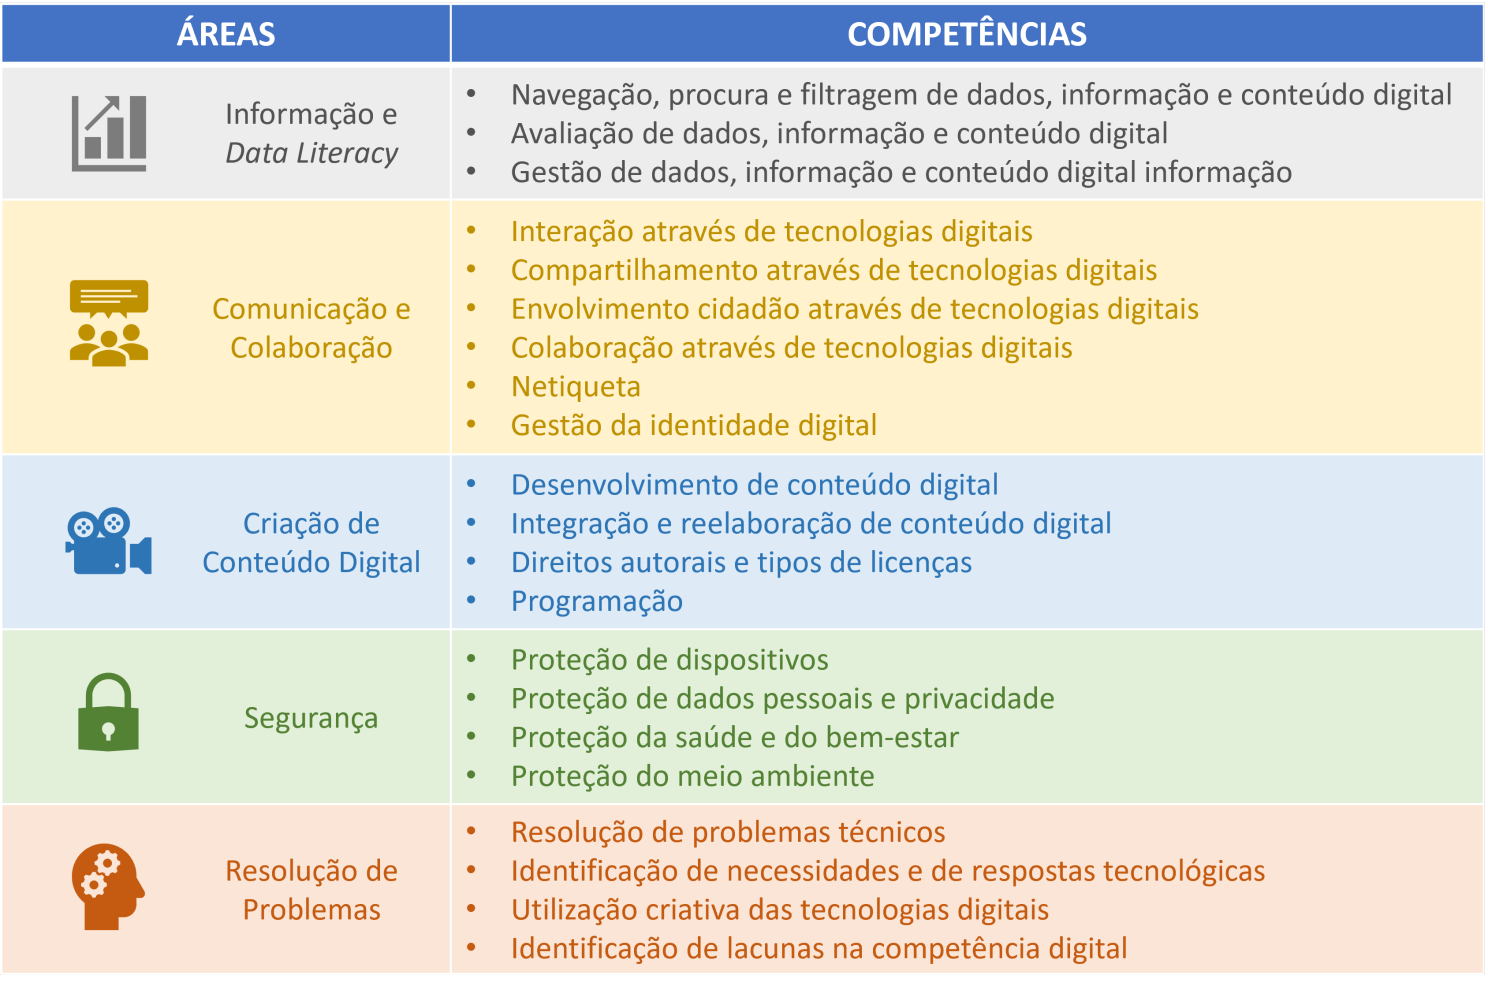 Competências do Quadro Europeu de Competência Digital para Cidadãos (Carretero et al, 2017) 